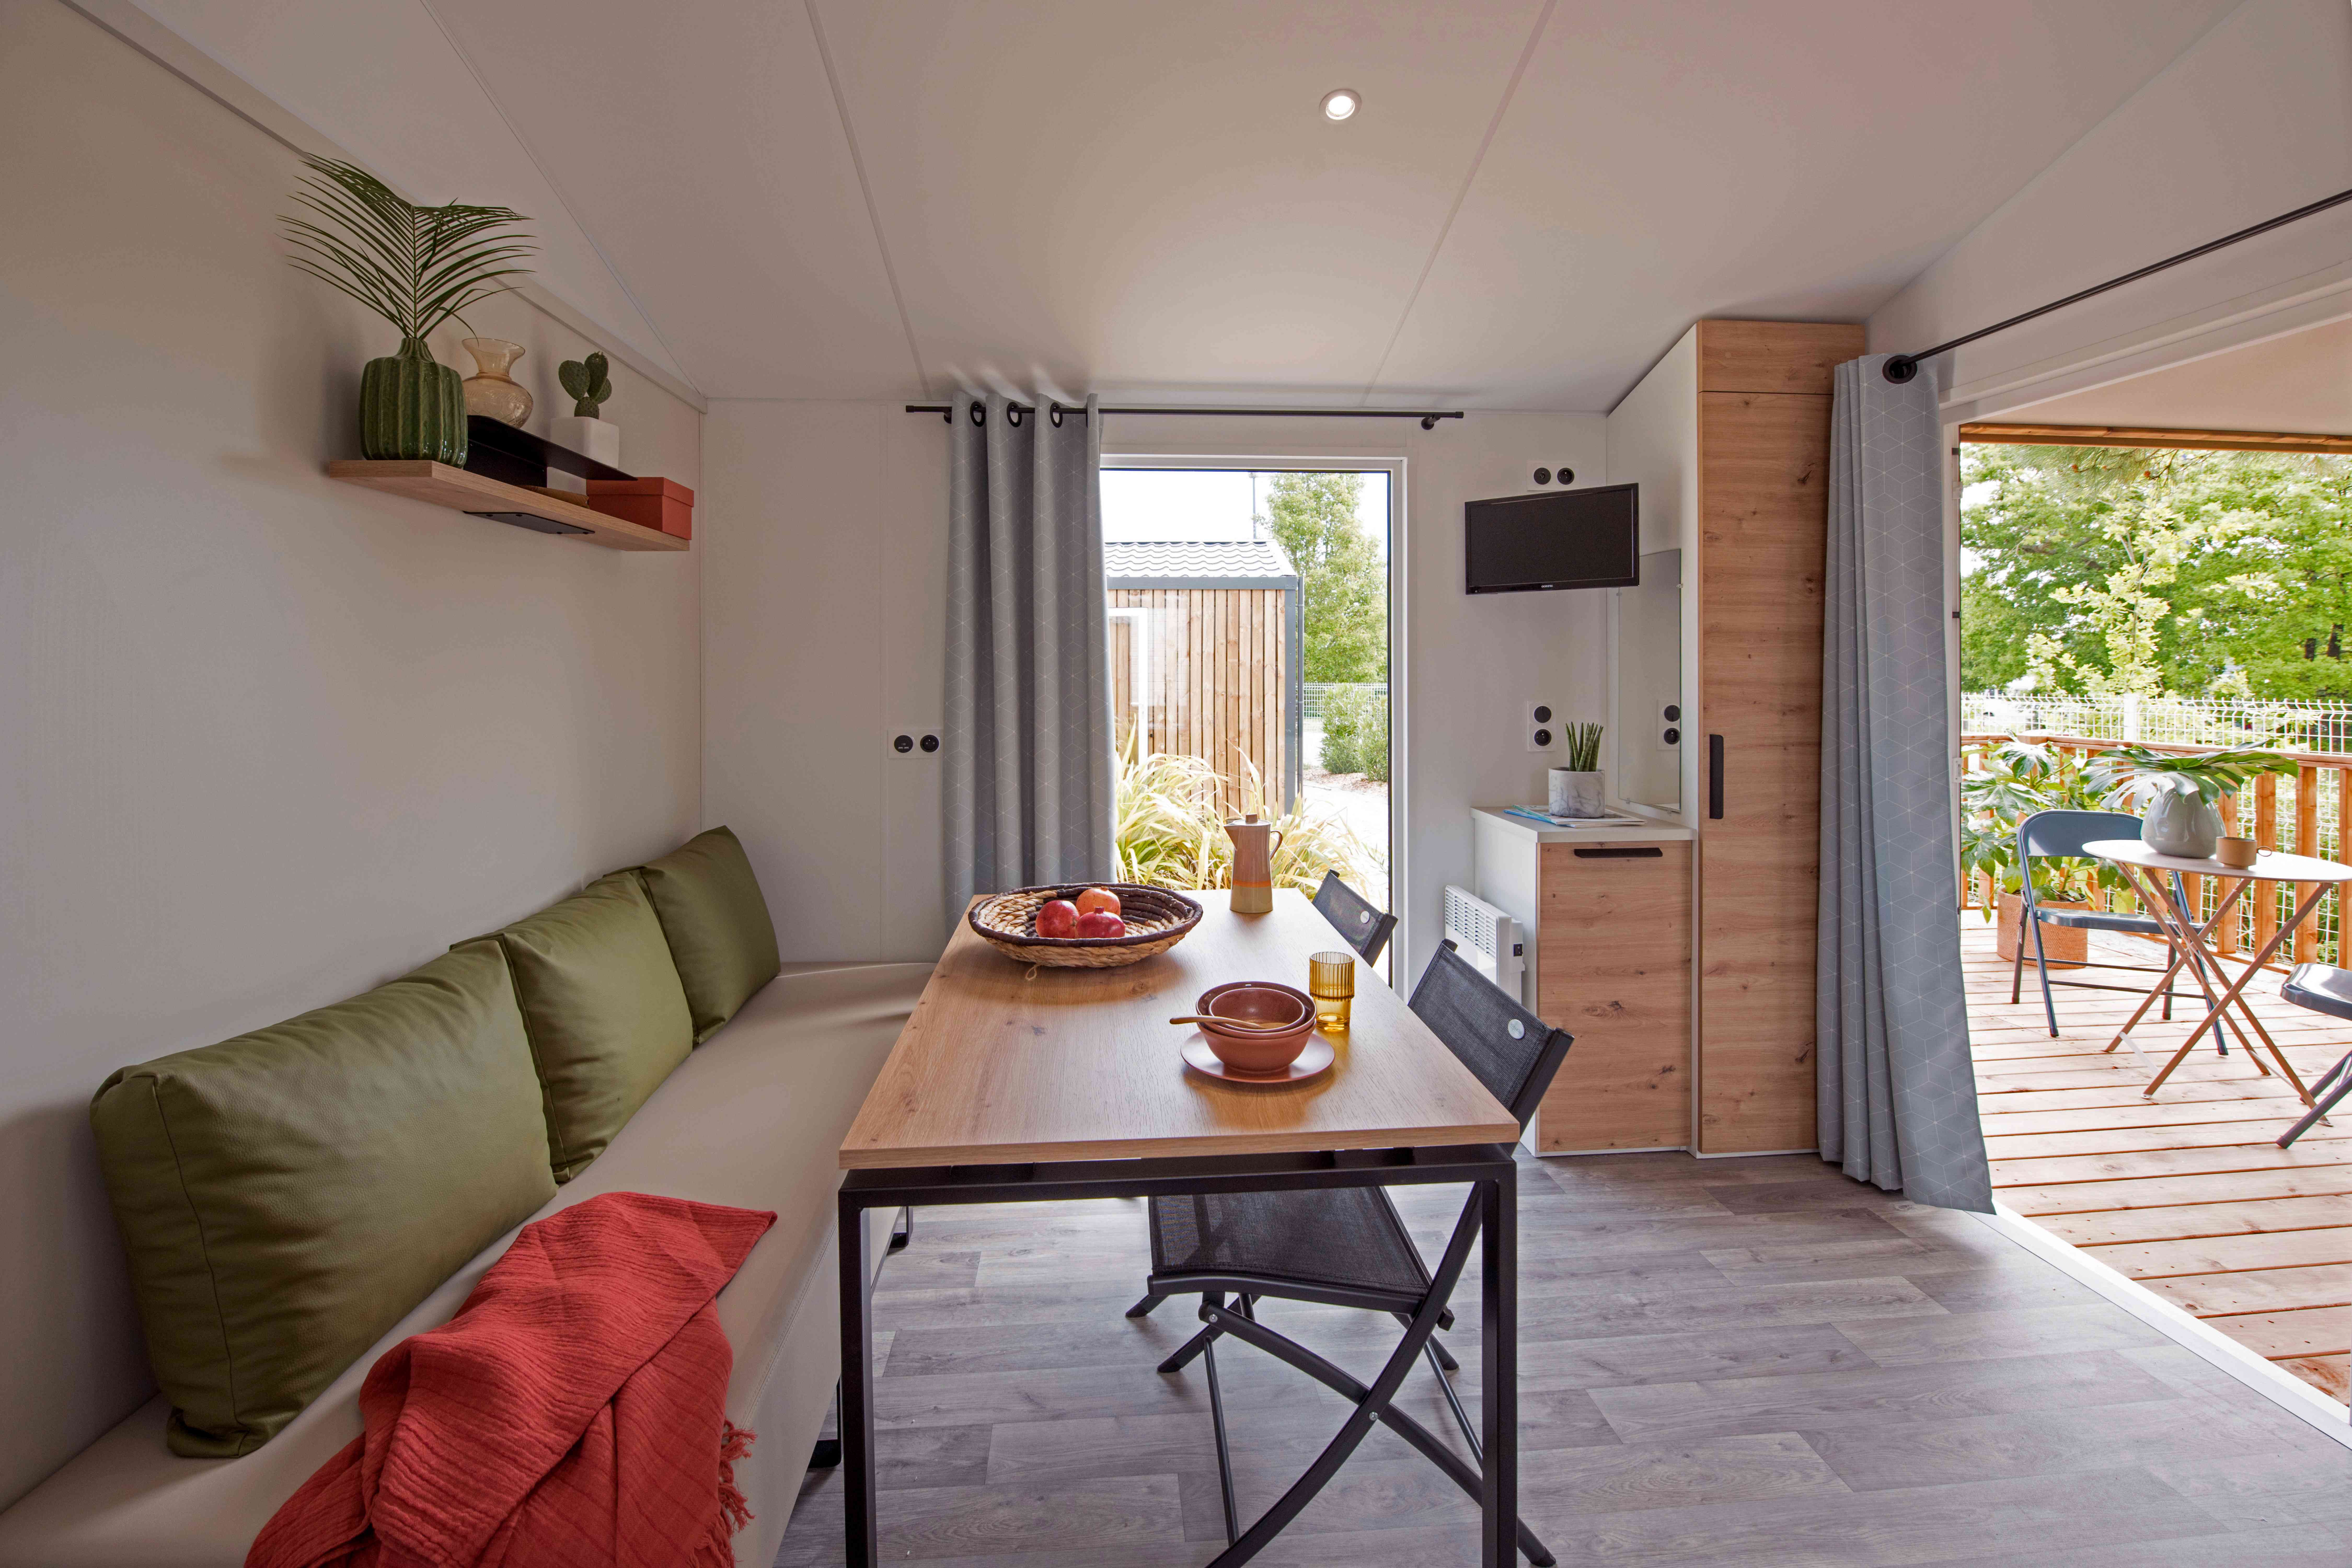 Location - Cottage Malaga Grand Confort Plus /D - Camping Campéole Médoc Plage